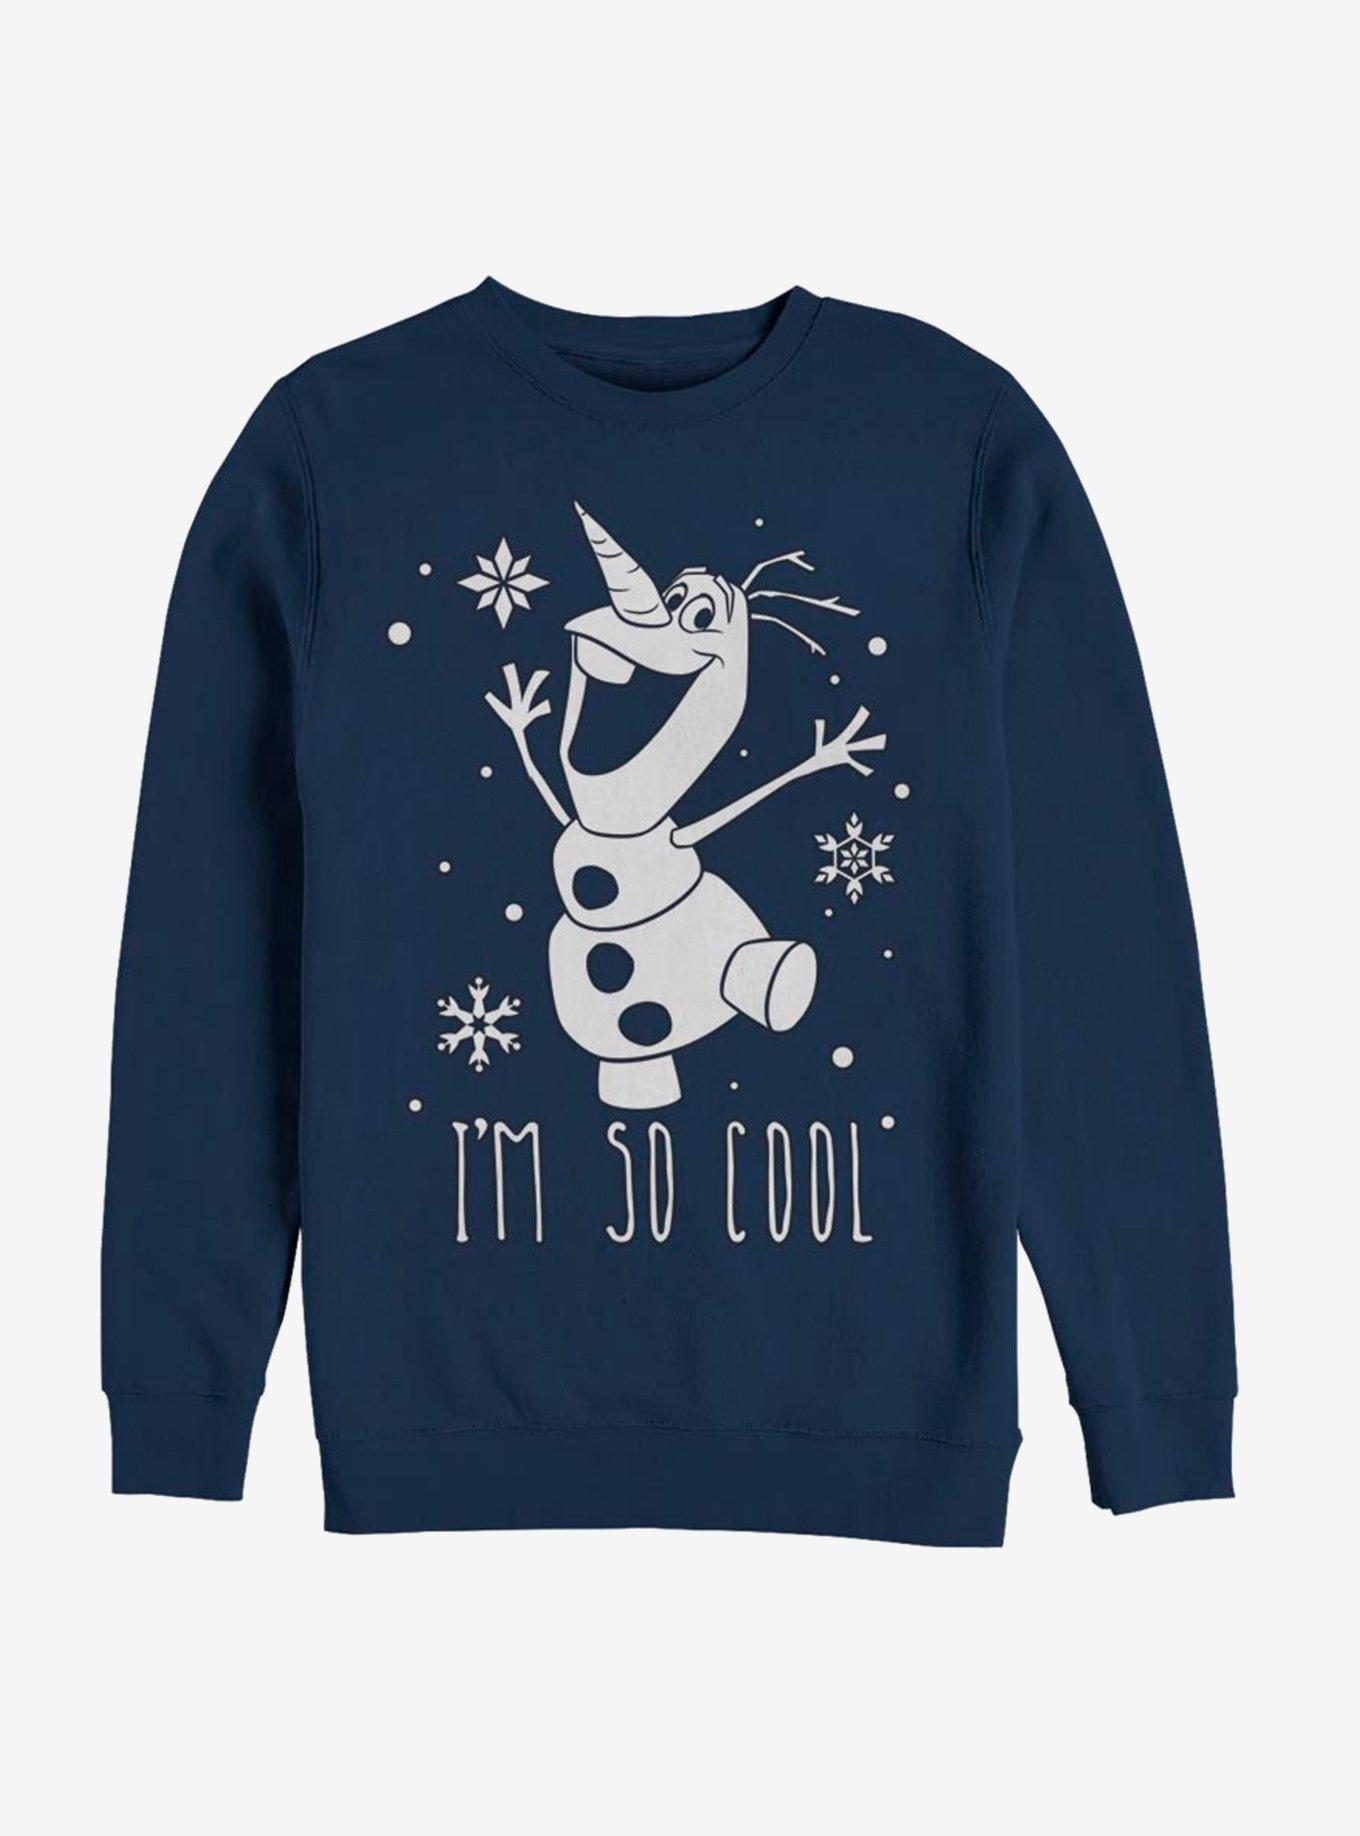 Disney Frozen So Cool Sweatshirt, NAVY, hi-res